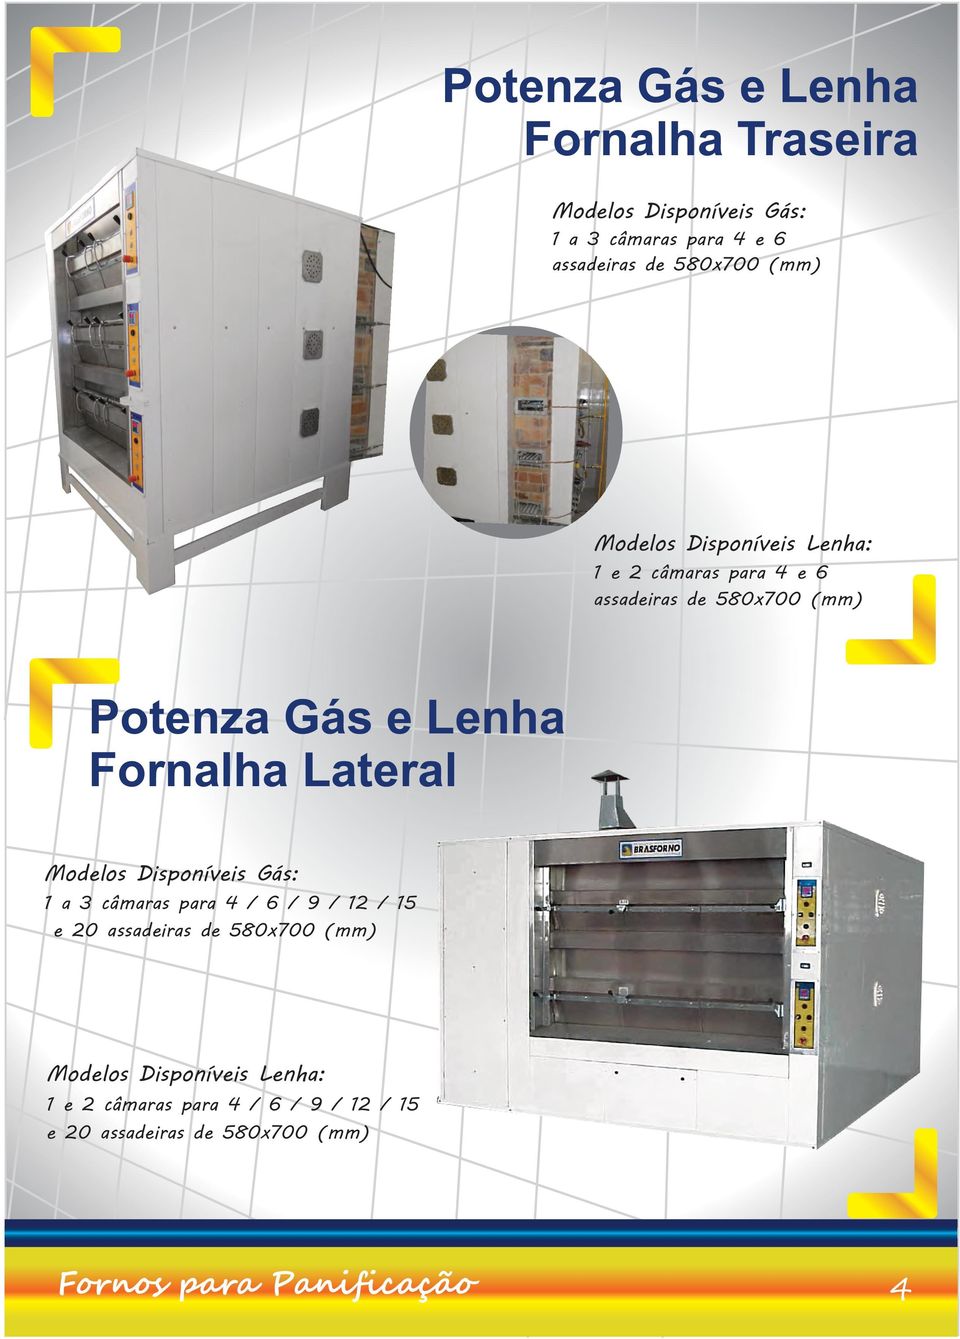 Lenha Fornalha Lateral Modelos Disponíveis Gás: 1 a 3 câmaras para 4 / 6 / 9 / 12 / 15 e assadeiras de